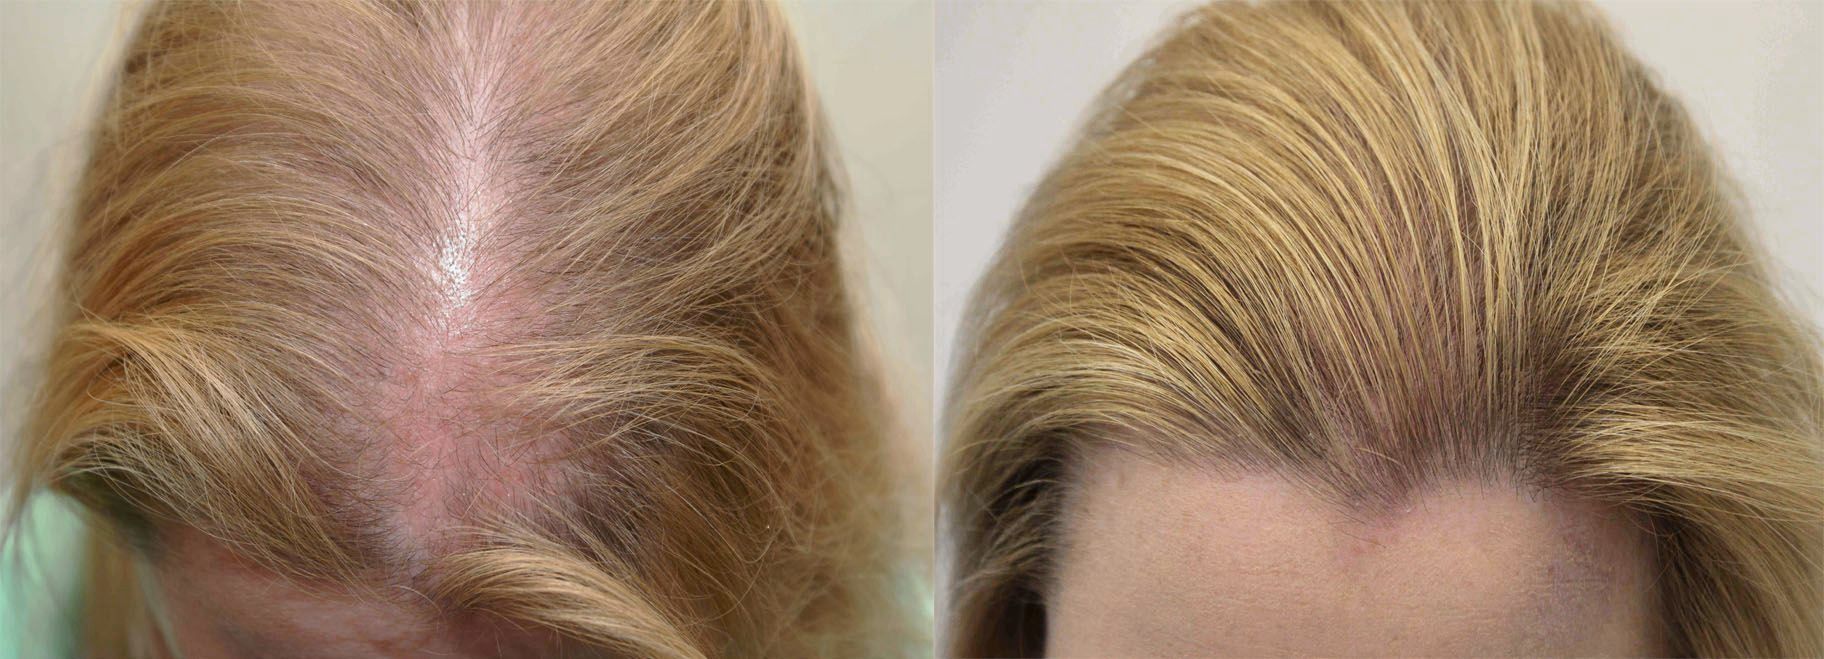 Осветление волос выпали. Мезотерапия волос до и после.